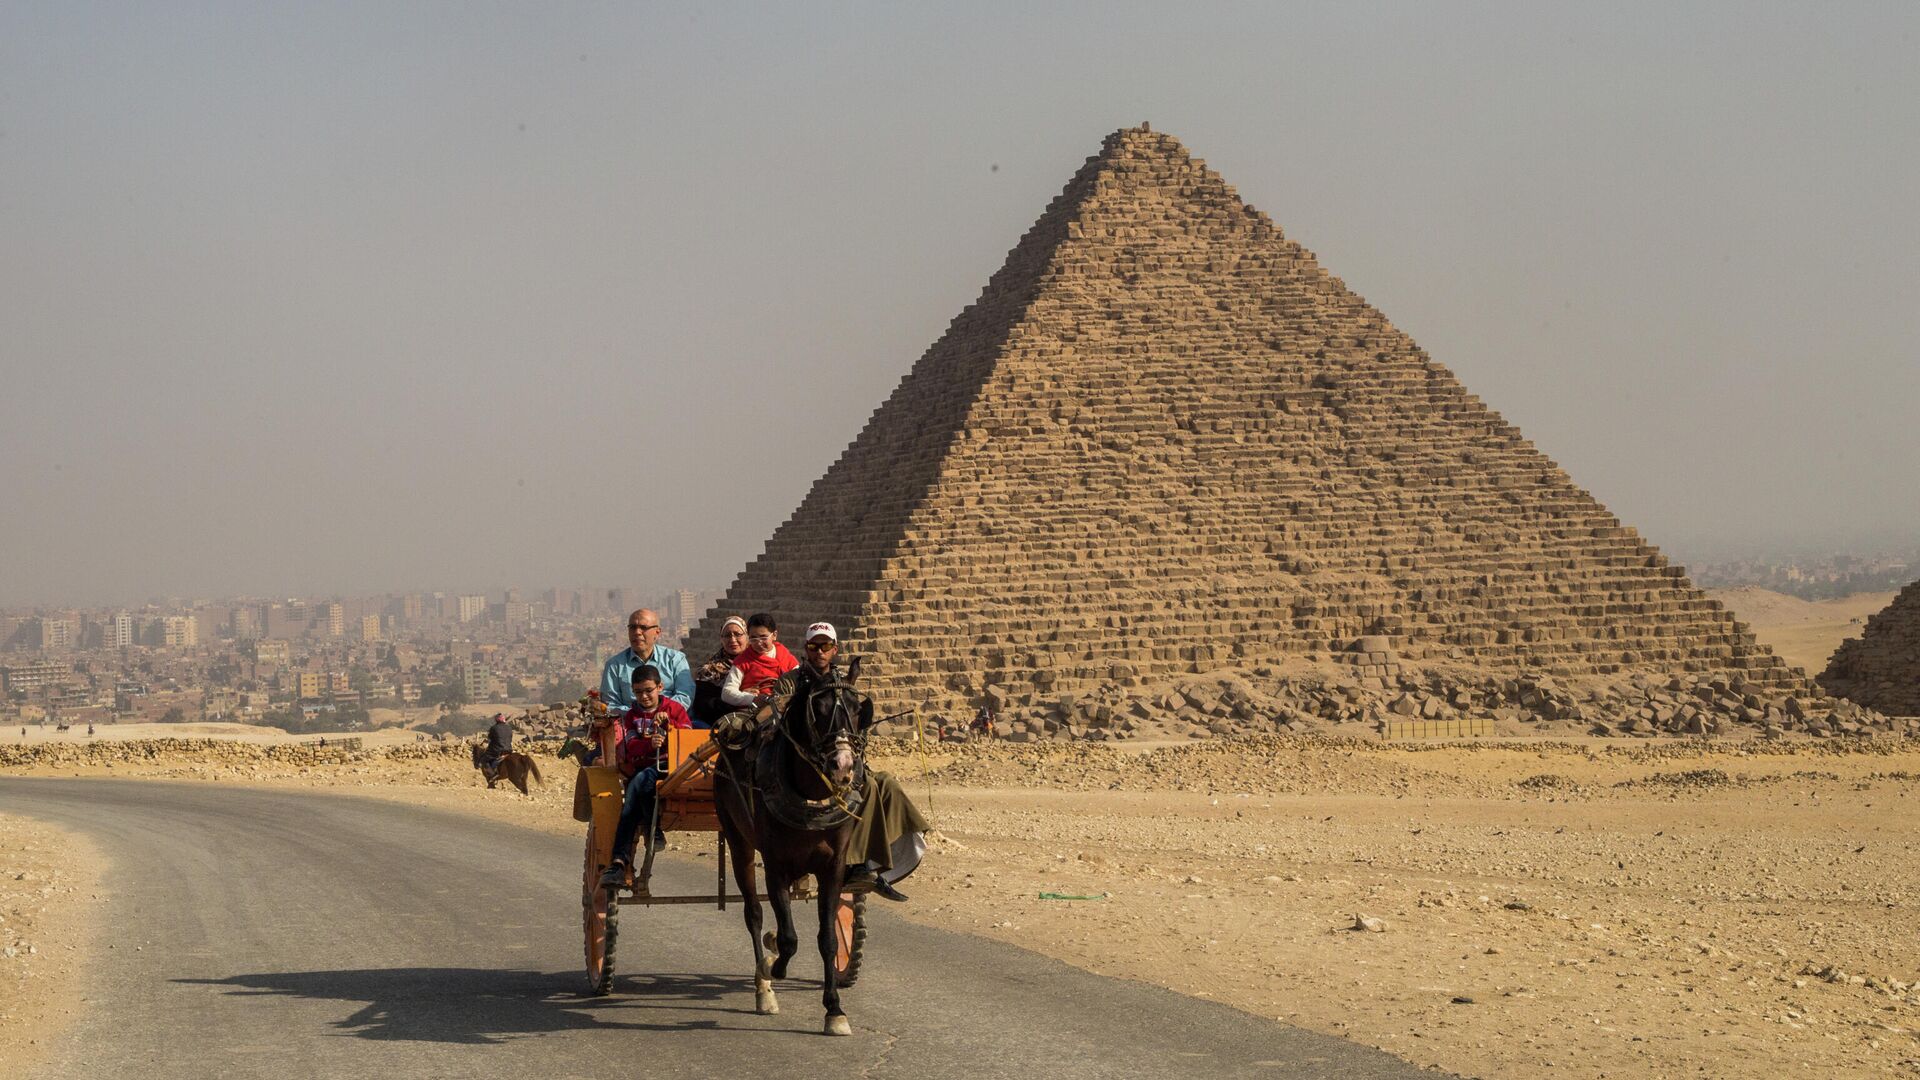 Экскурсия Пирамиды Гизы и Национальный музей Египта из Шарм-эль-Шейха - цена $45